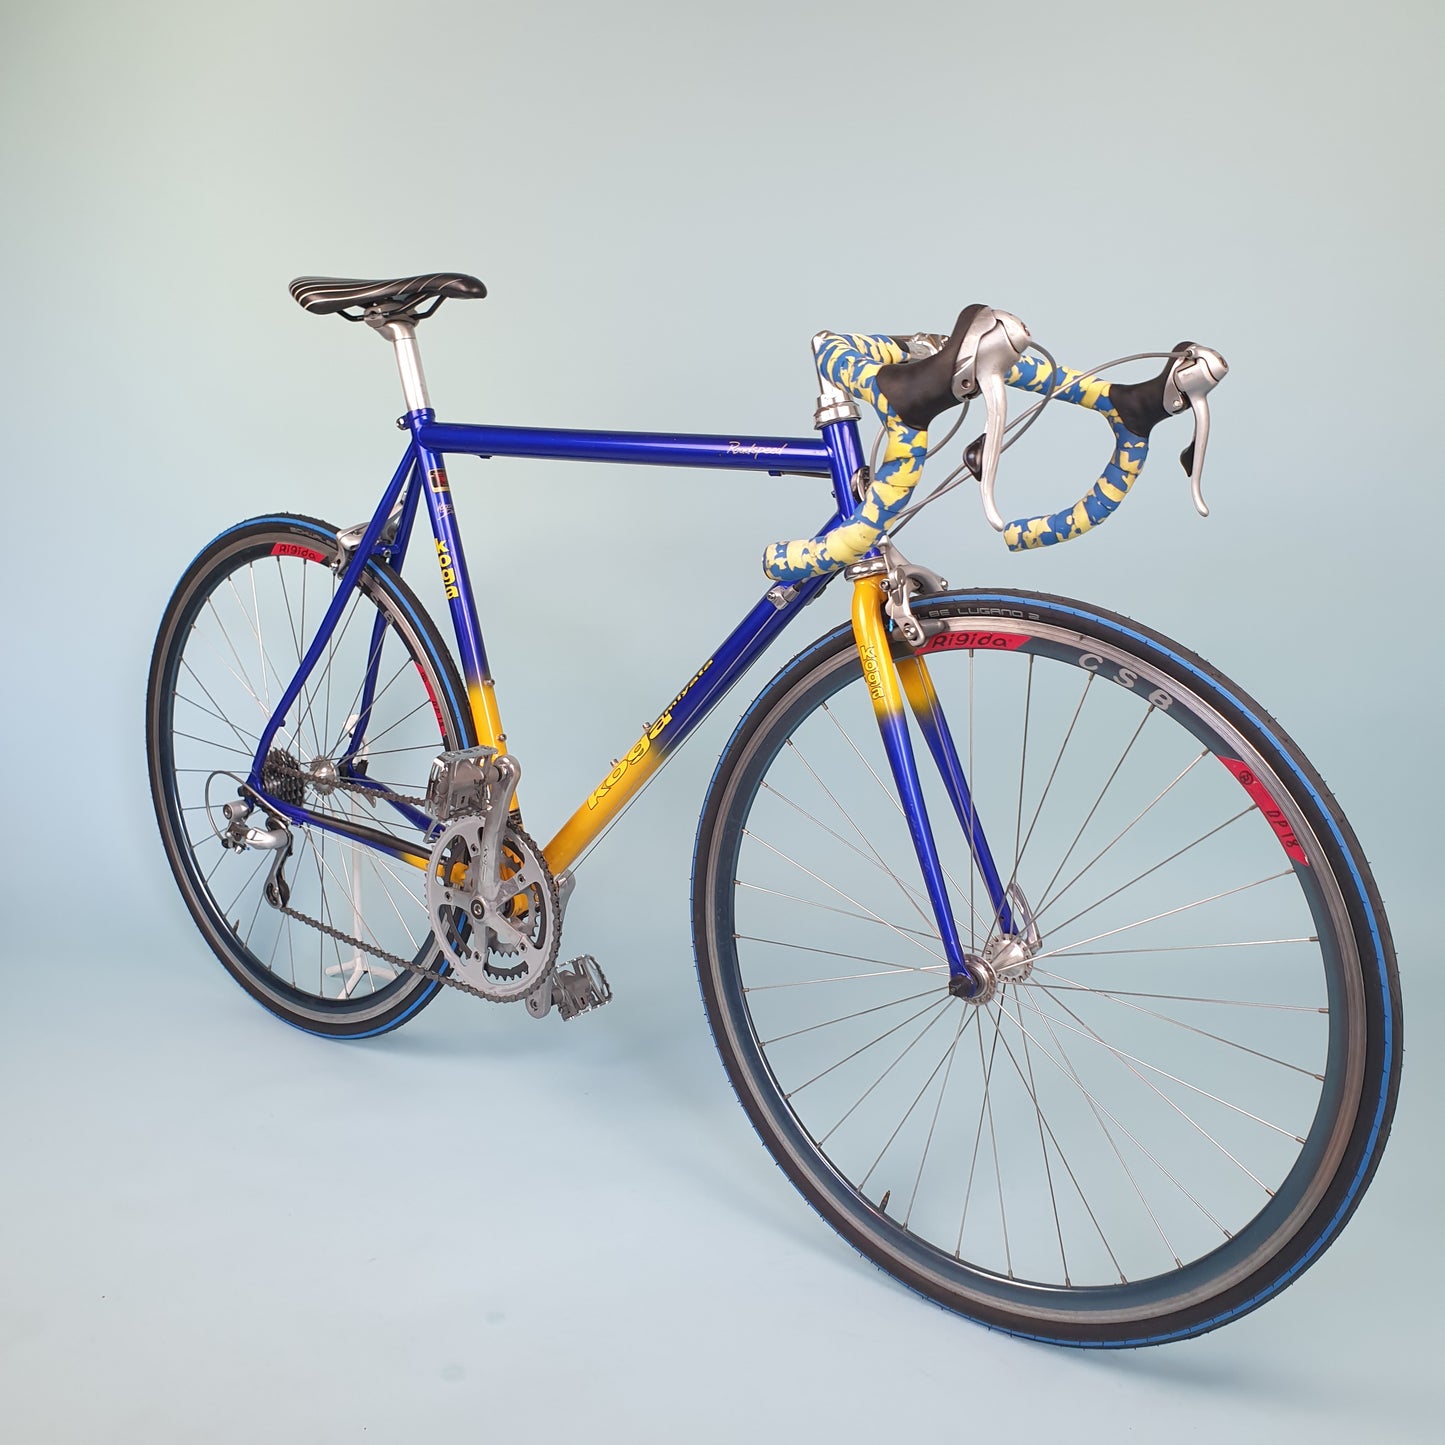 Koga Miyata Roadspeed size 56 Vintage racefiets / Vintage bike @Amsterdam